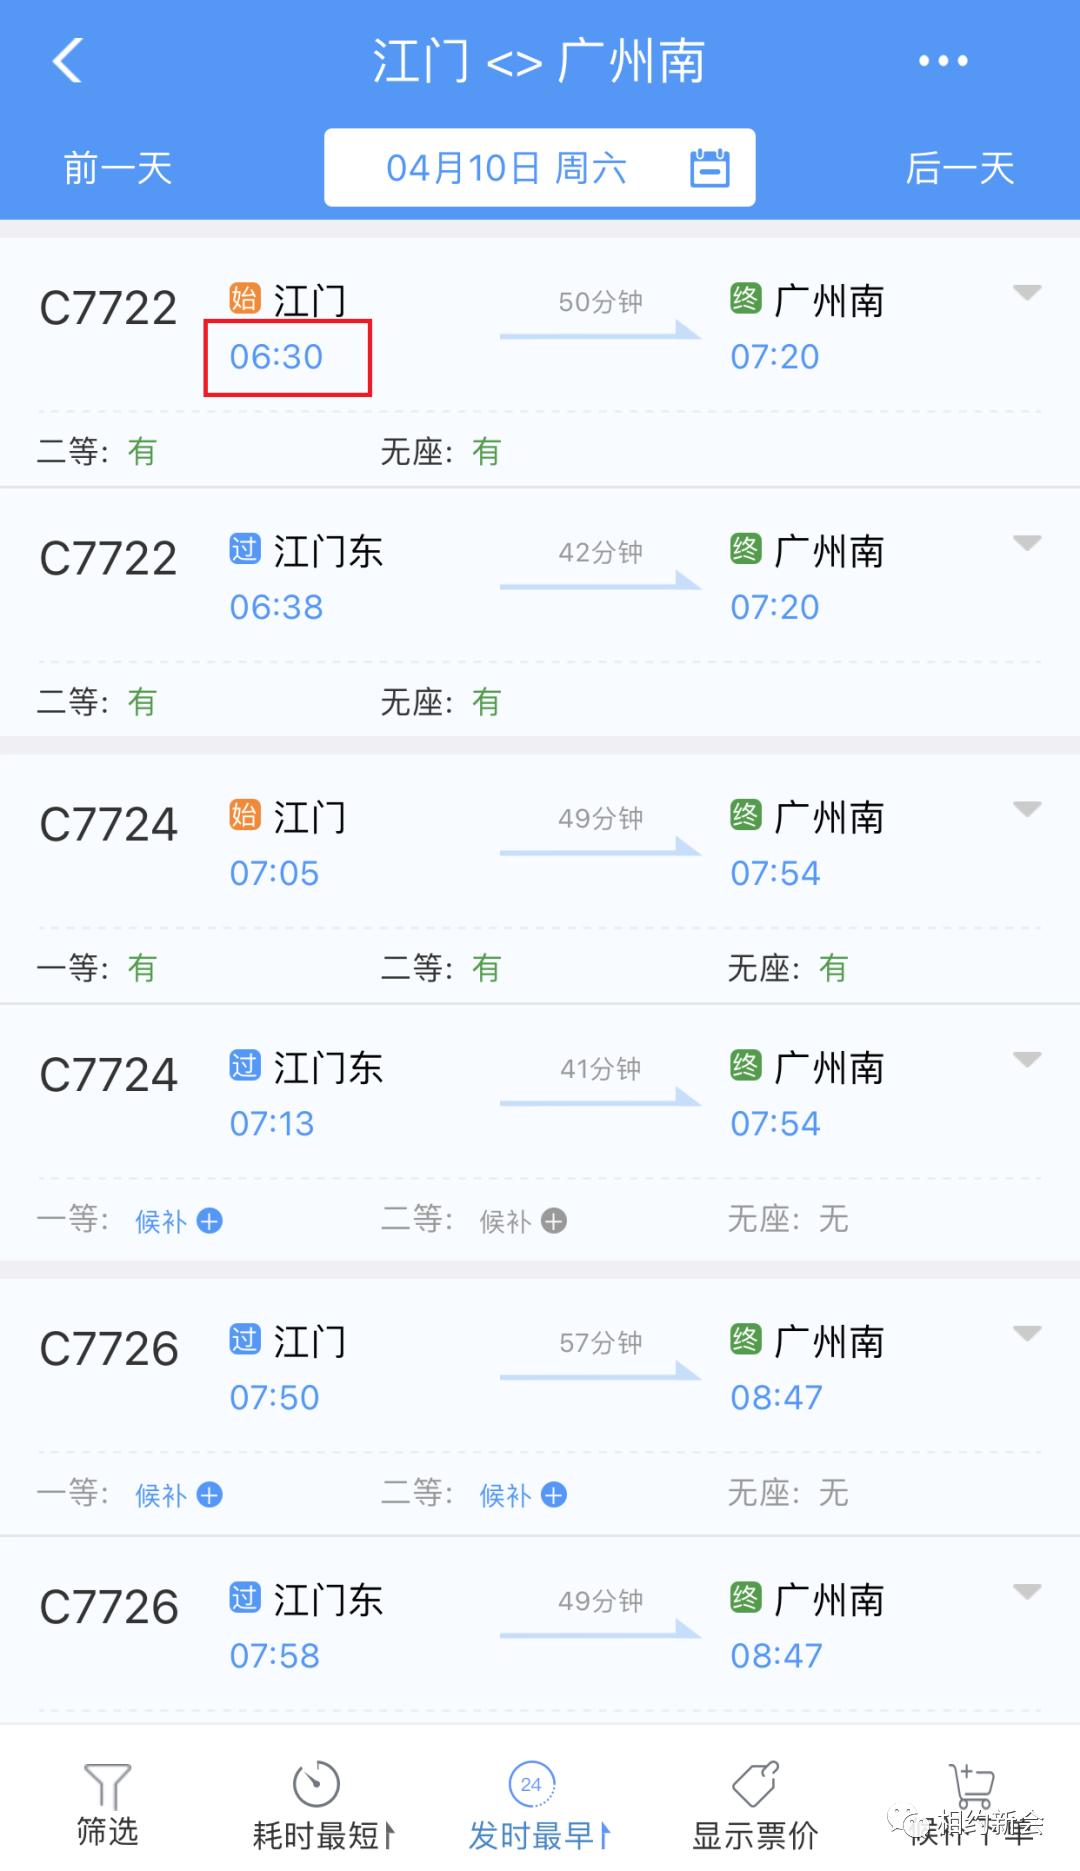 浙江省各铁路车站车次数量情况（2020.9.1） - 知乎